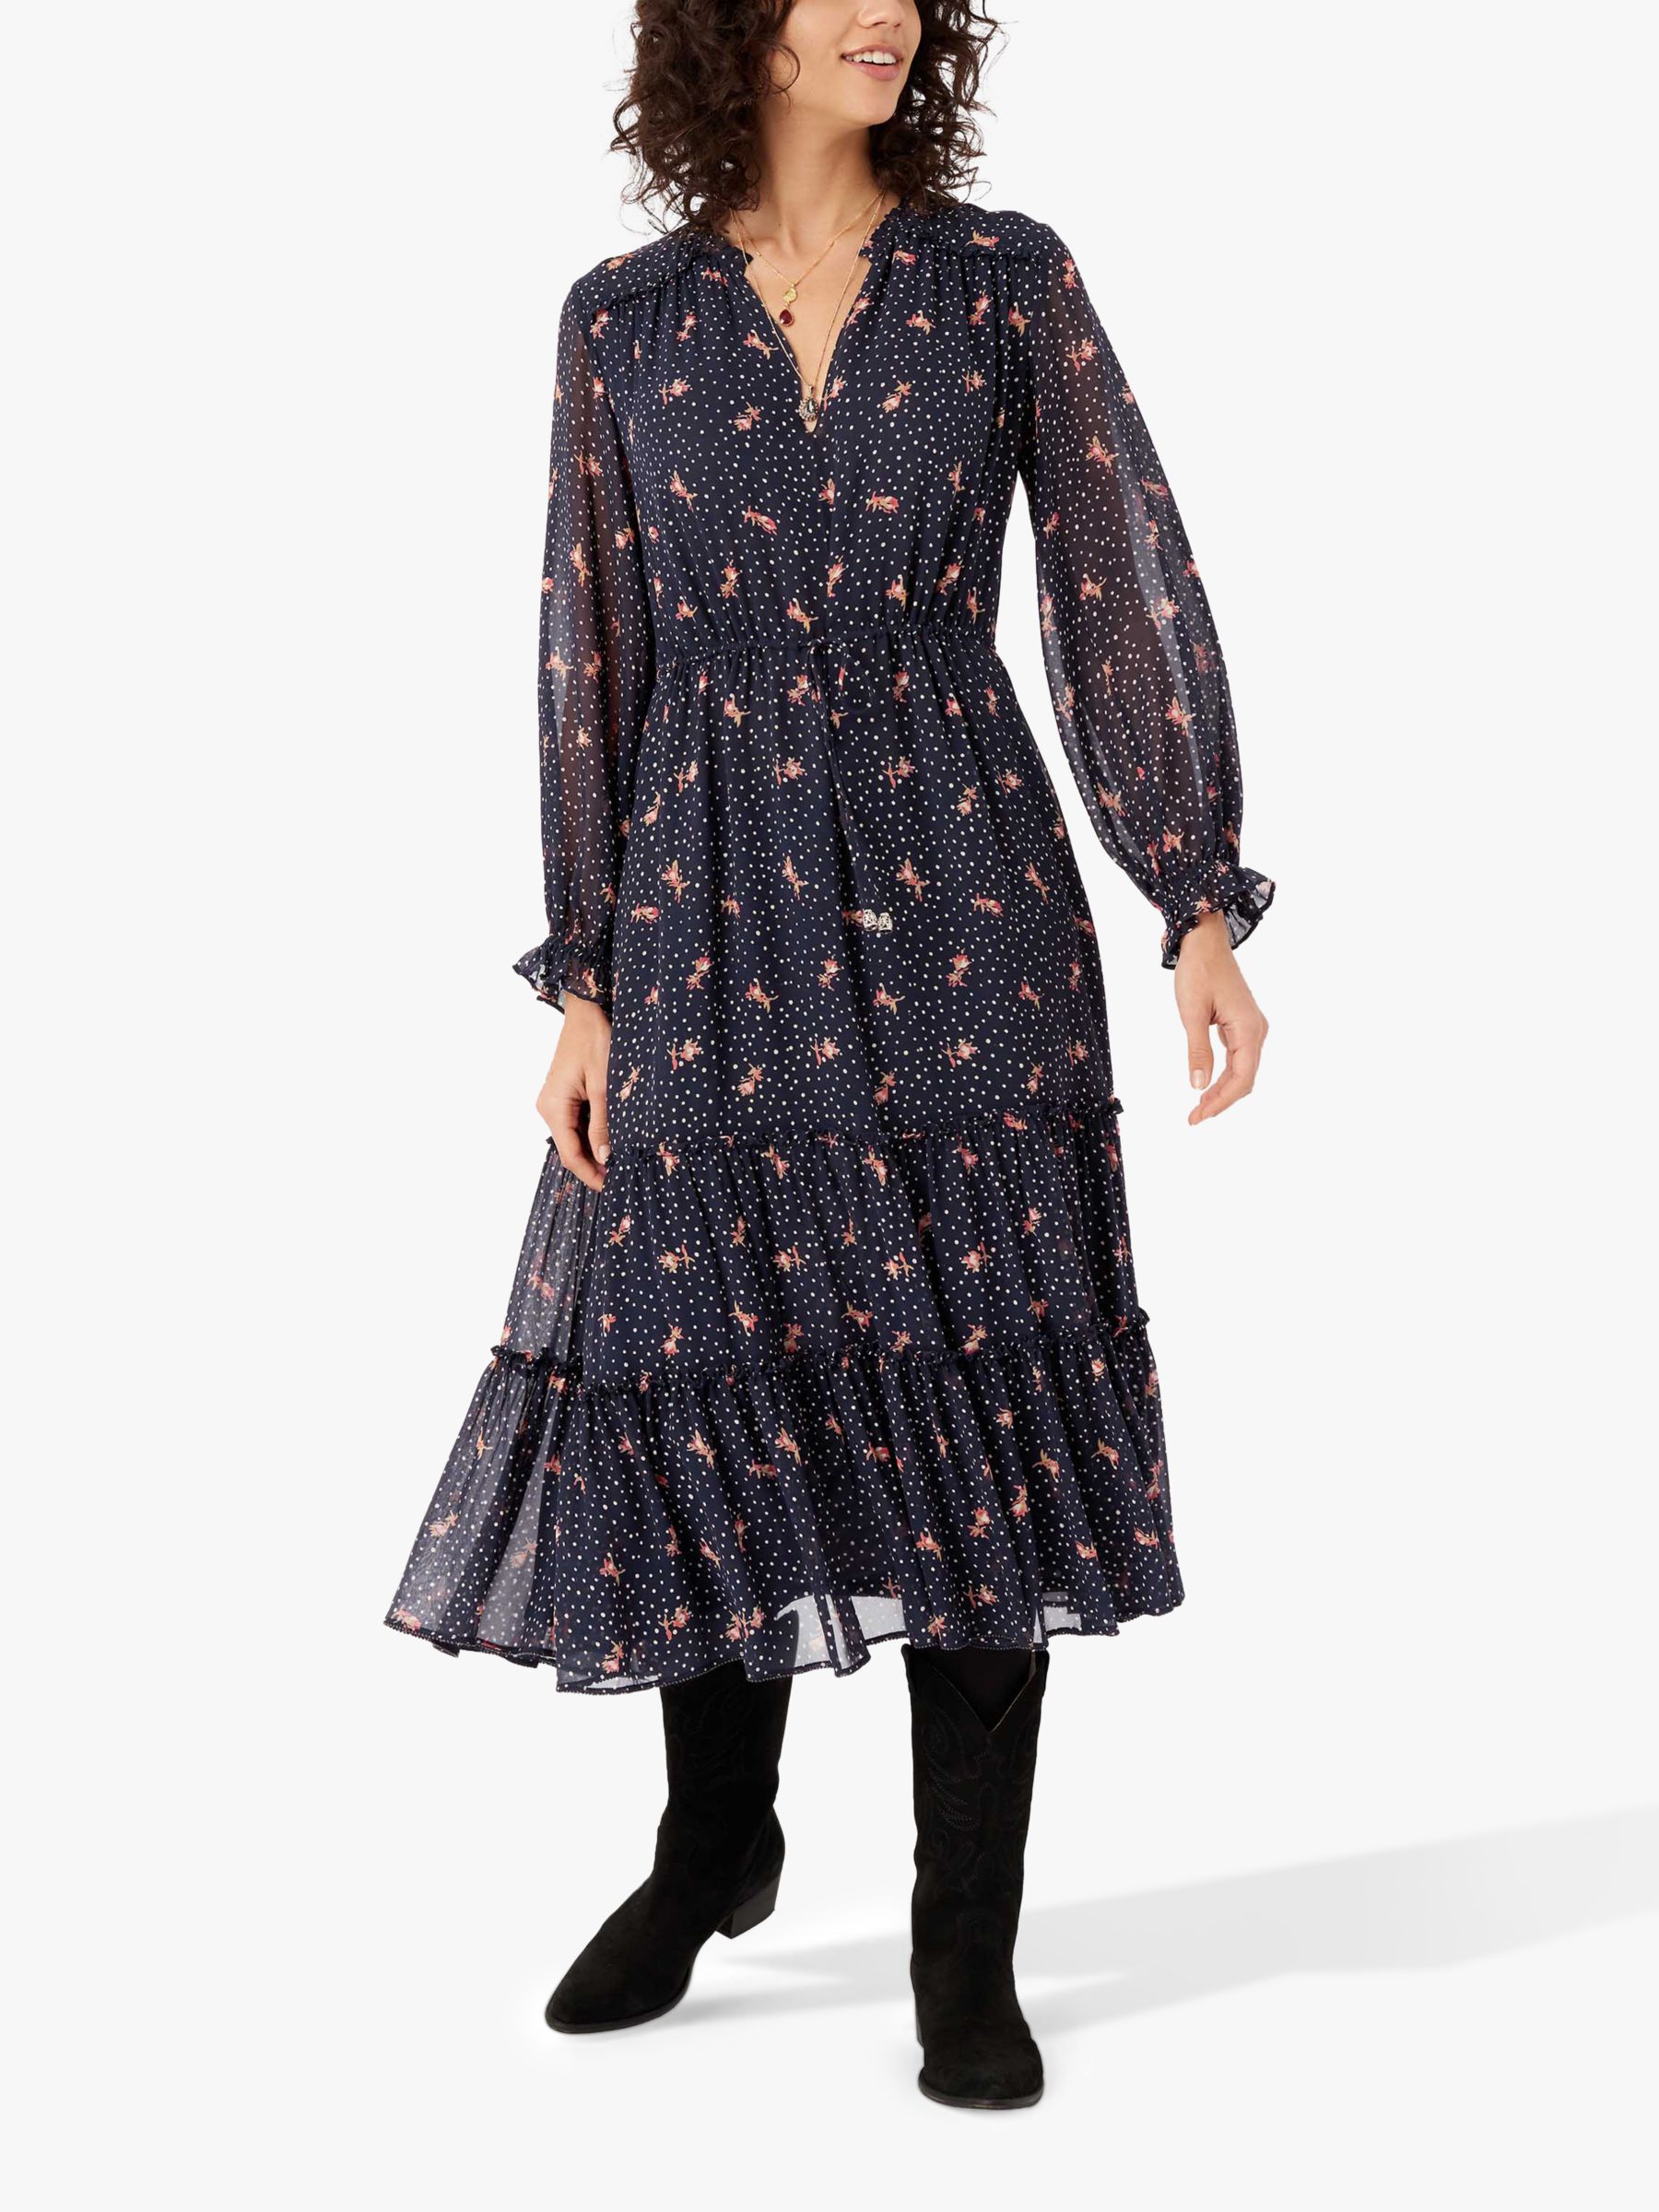 Brora Silk Spotted Midi Dress, Midnight at John Lewis & Partners